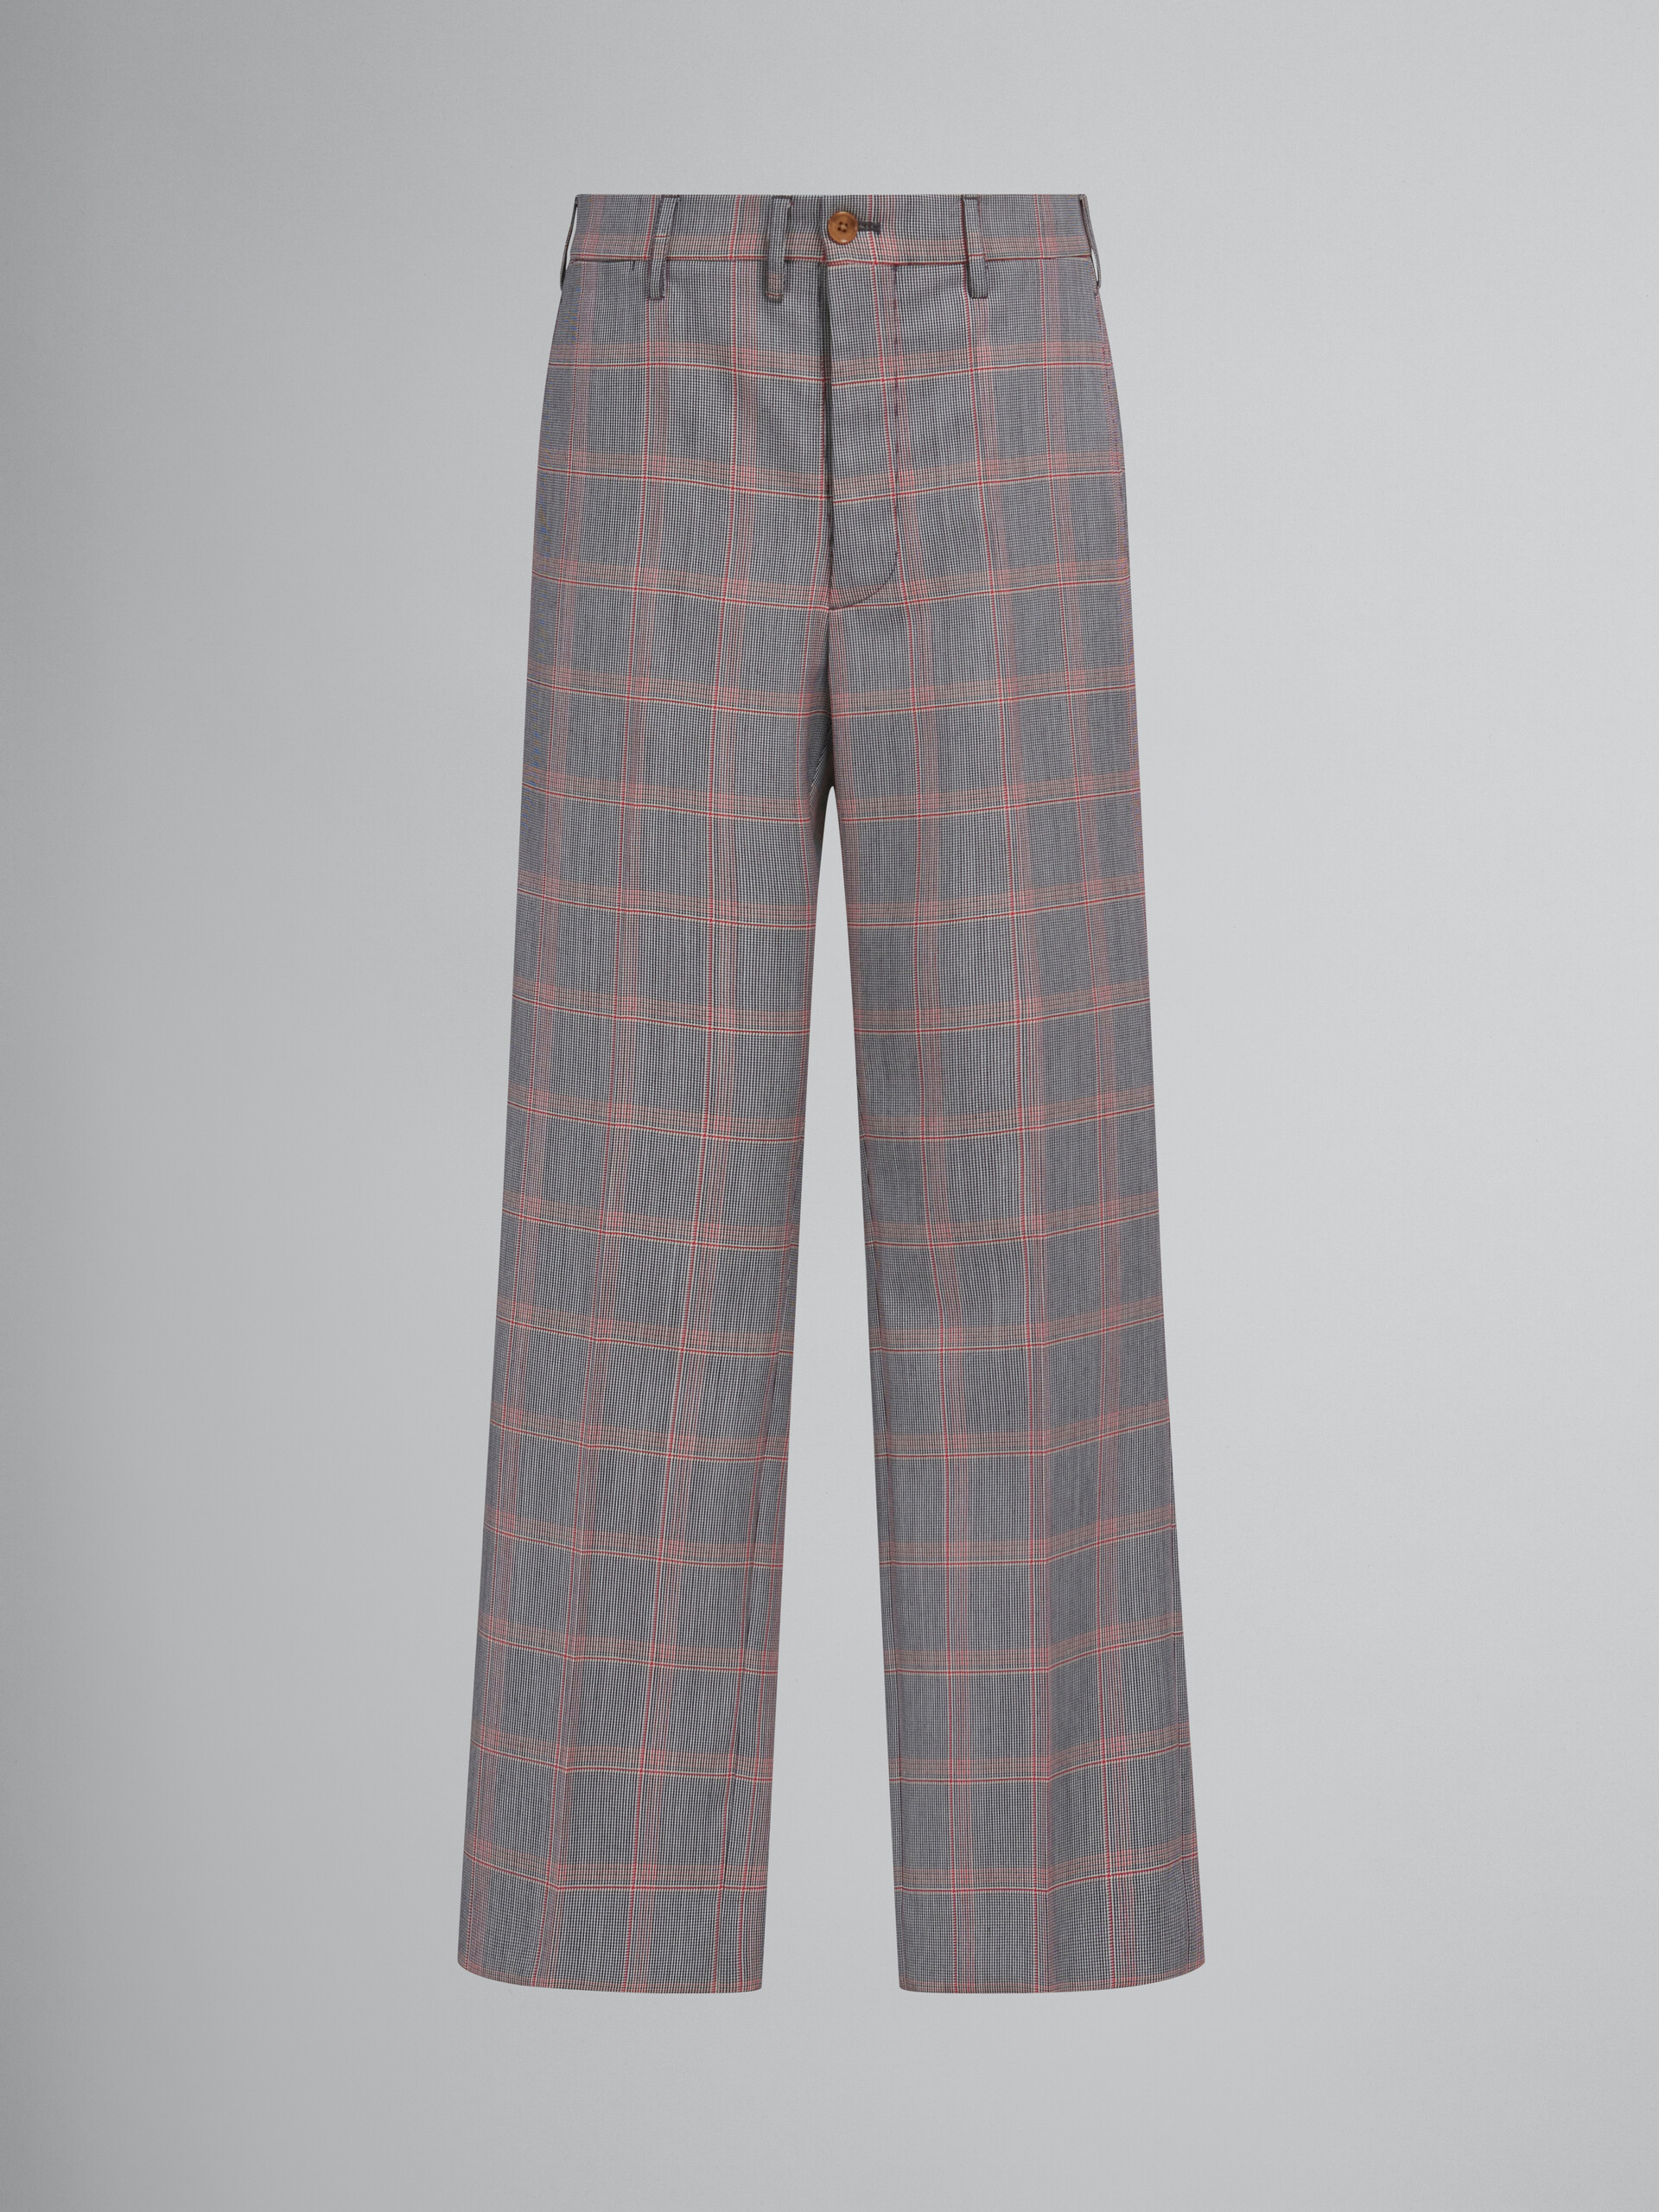 Pantalón chino naranja de lana técnica a cuadros - Pantalones - Image 1